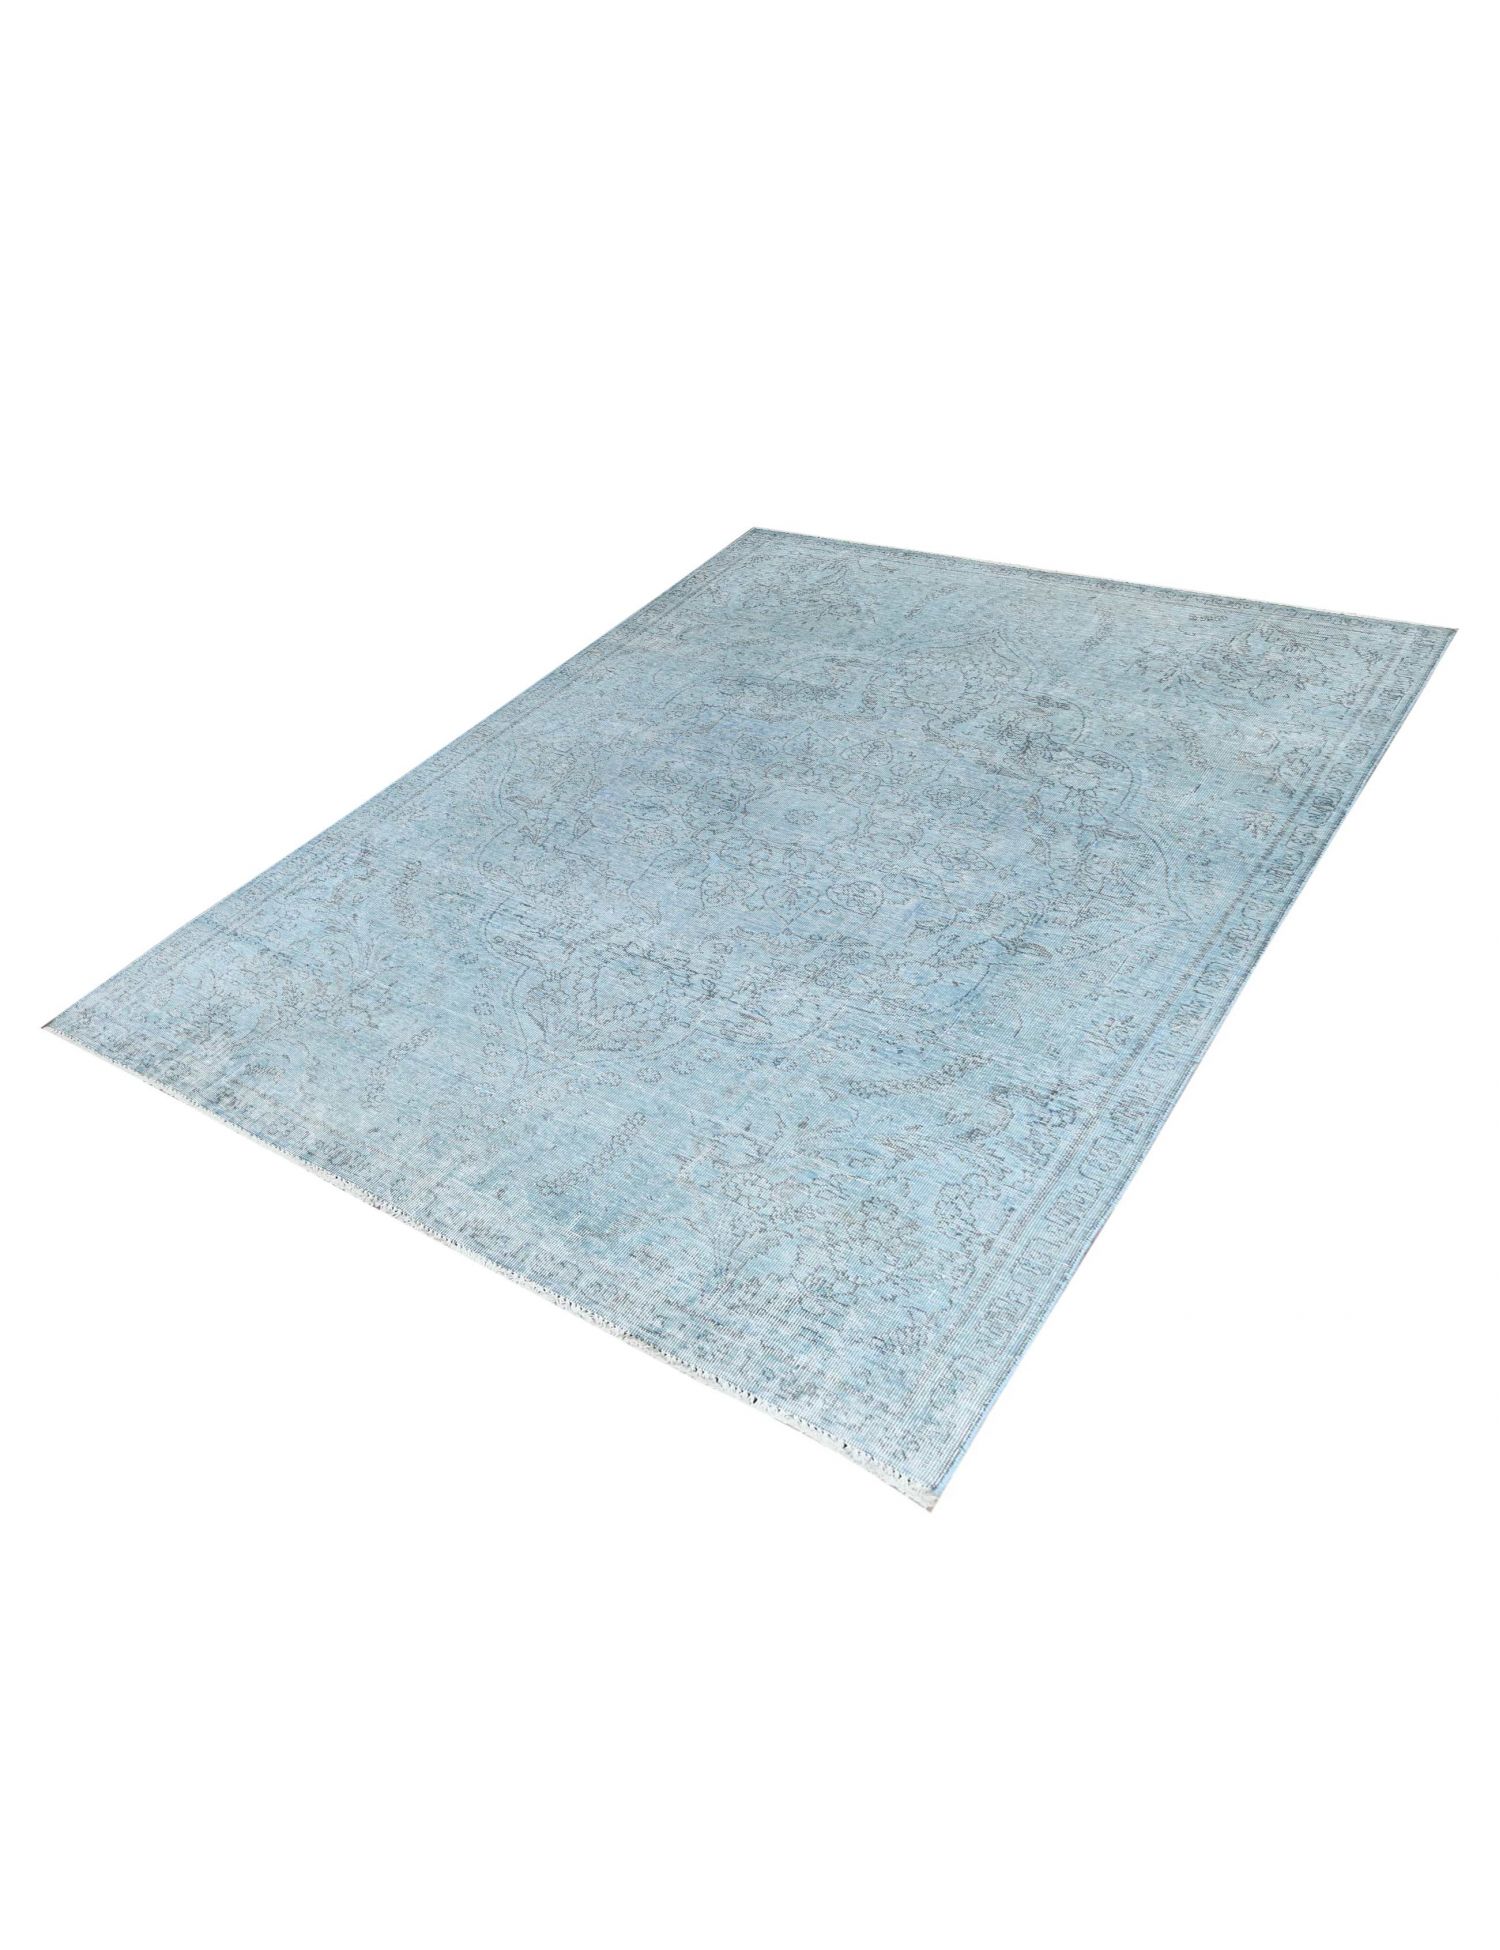 Vintage Carpet  blue <br/>265 x 179 cm